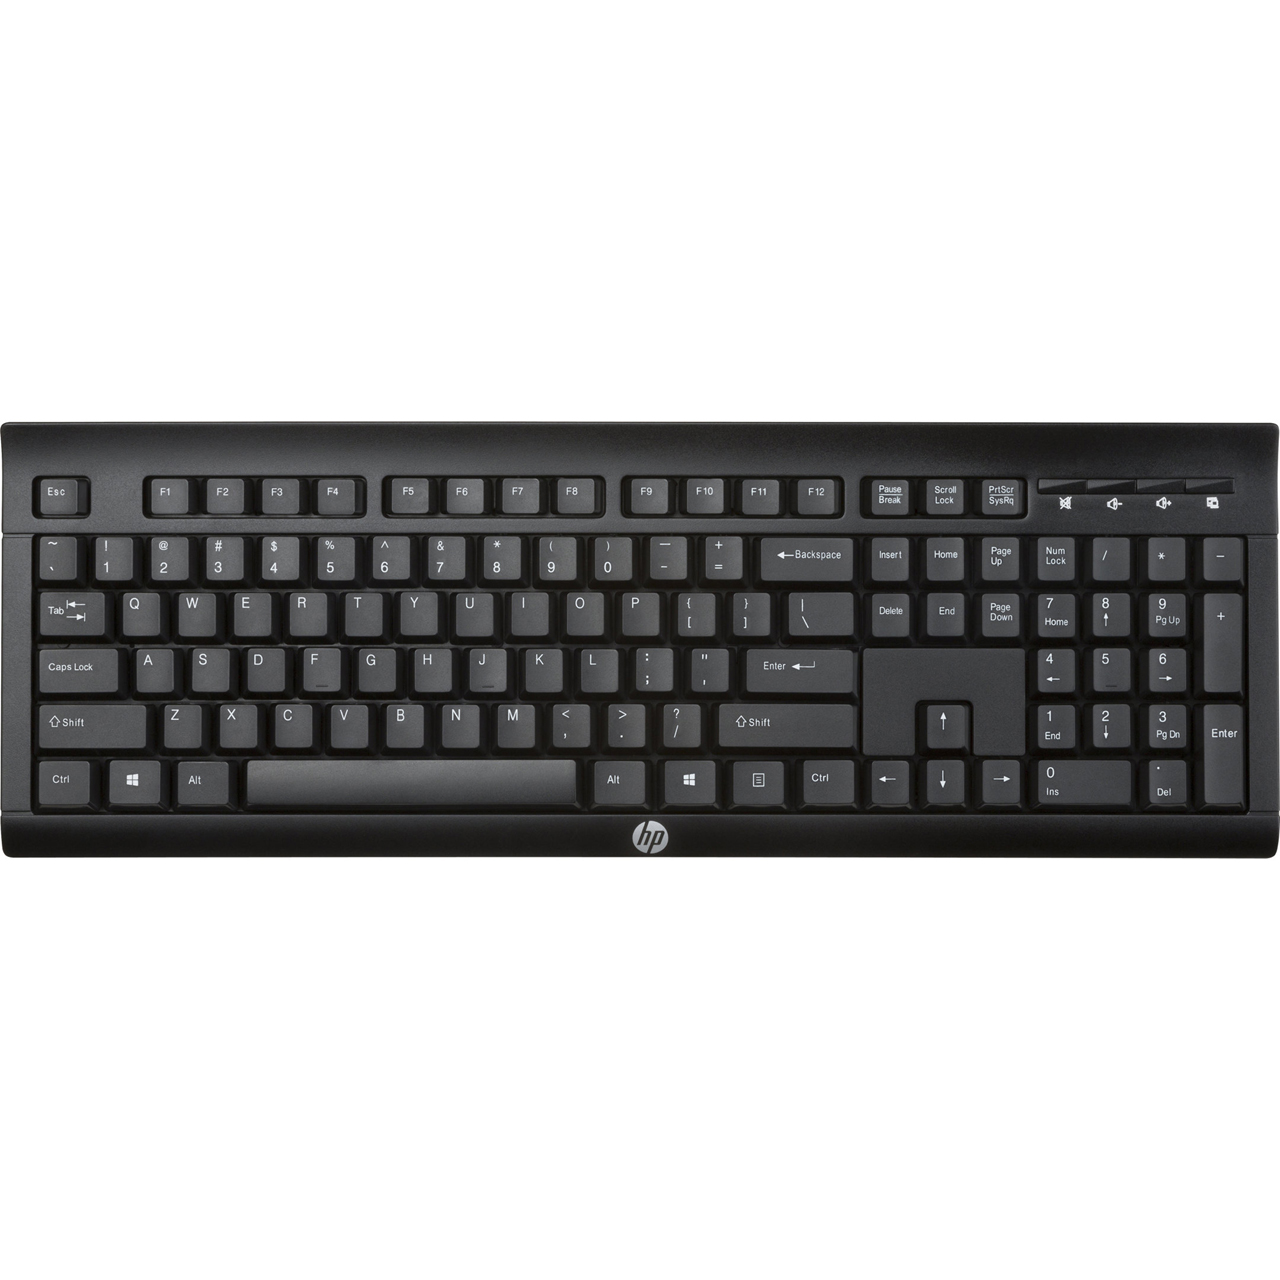 HP K2500 Wireless USB Keyboard Review